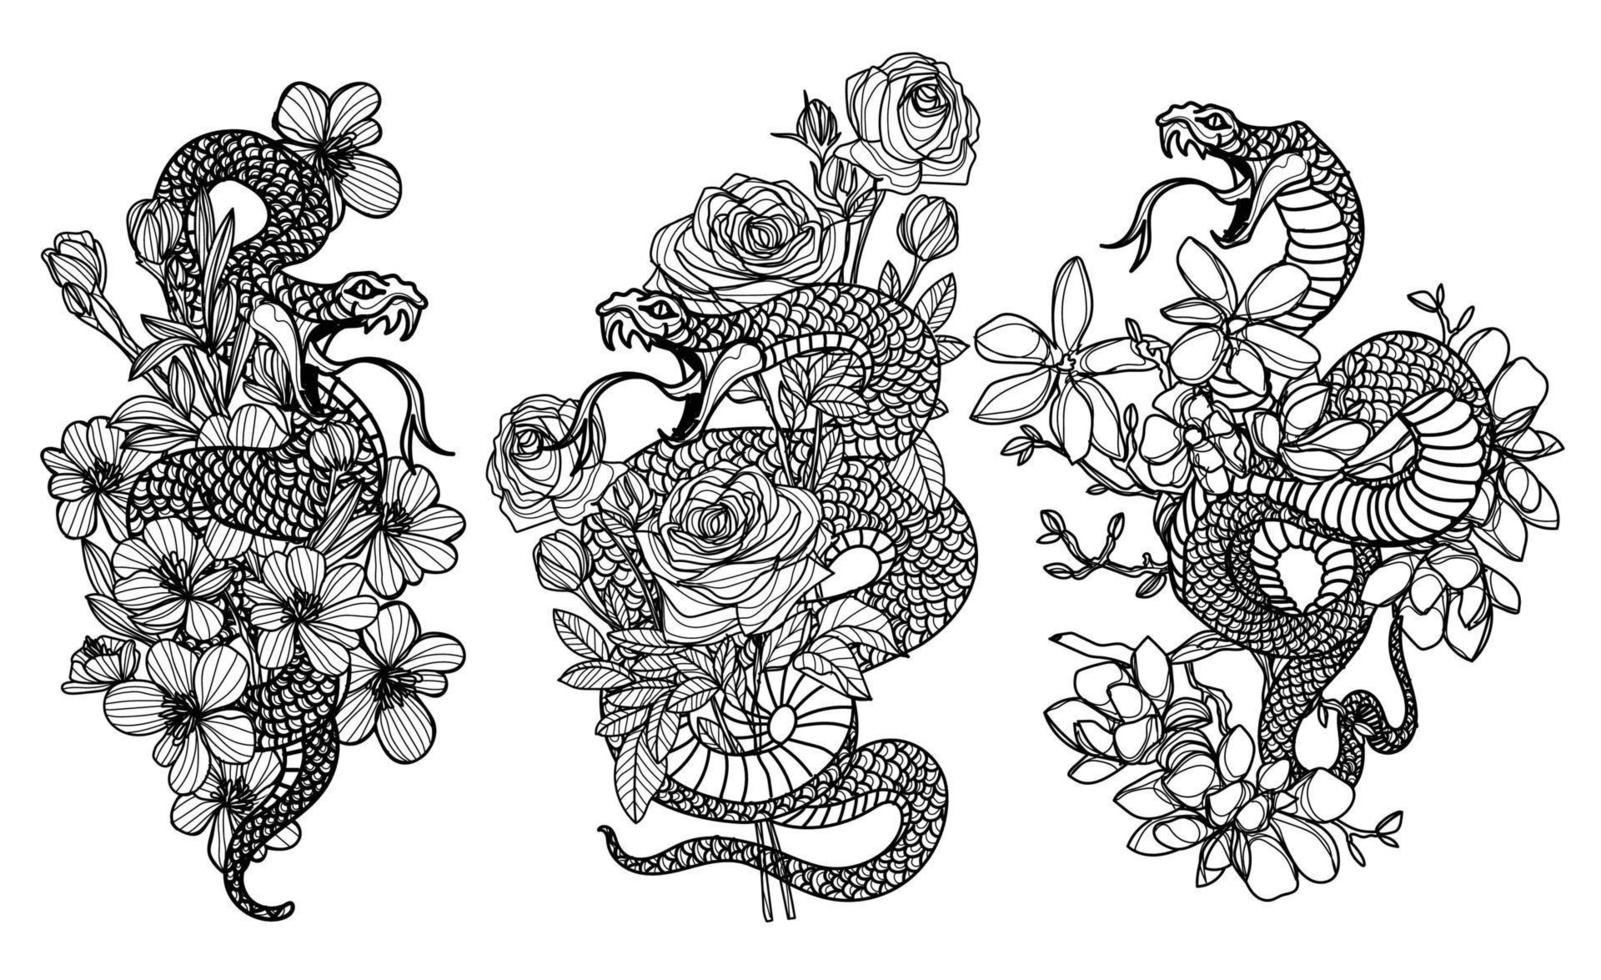 tatouage art serpent et fleur dessin et croquis noir et blanc vecteur